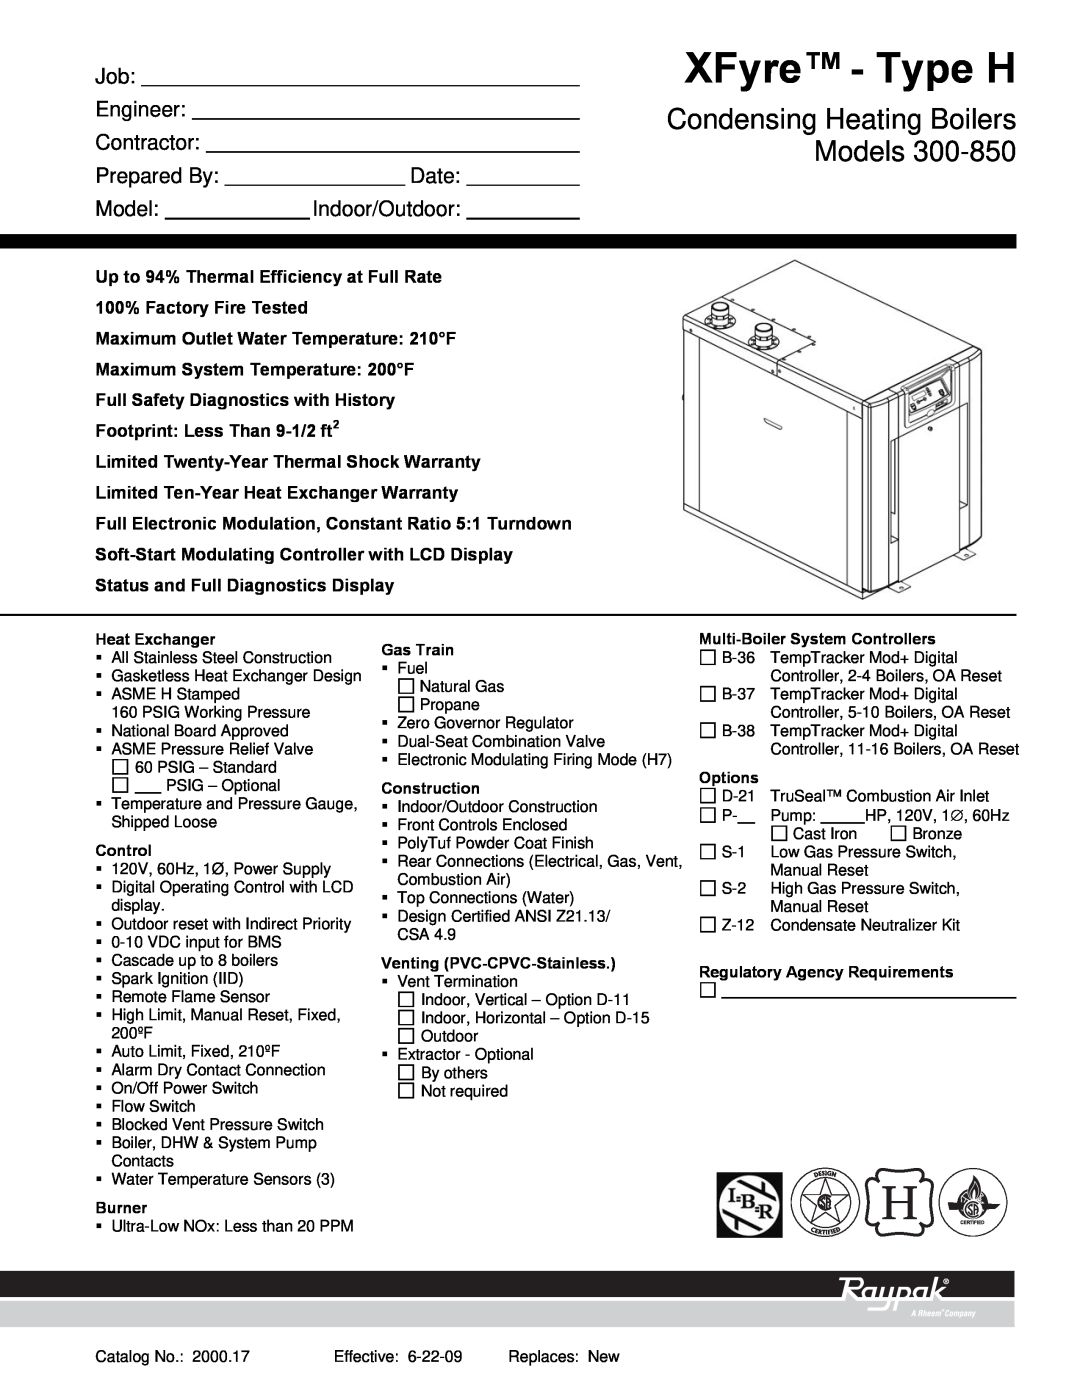 Raypak 300-850 warranty XFyre - Type H, Condensing Heating Boilers Models, Job Engineer Contractor, Prepared By, Date 